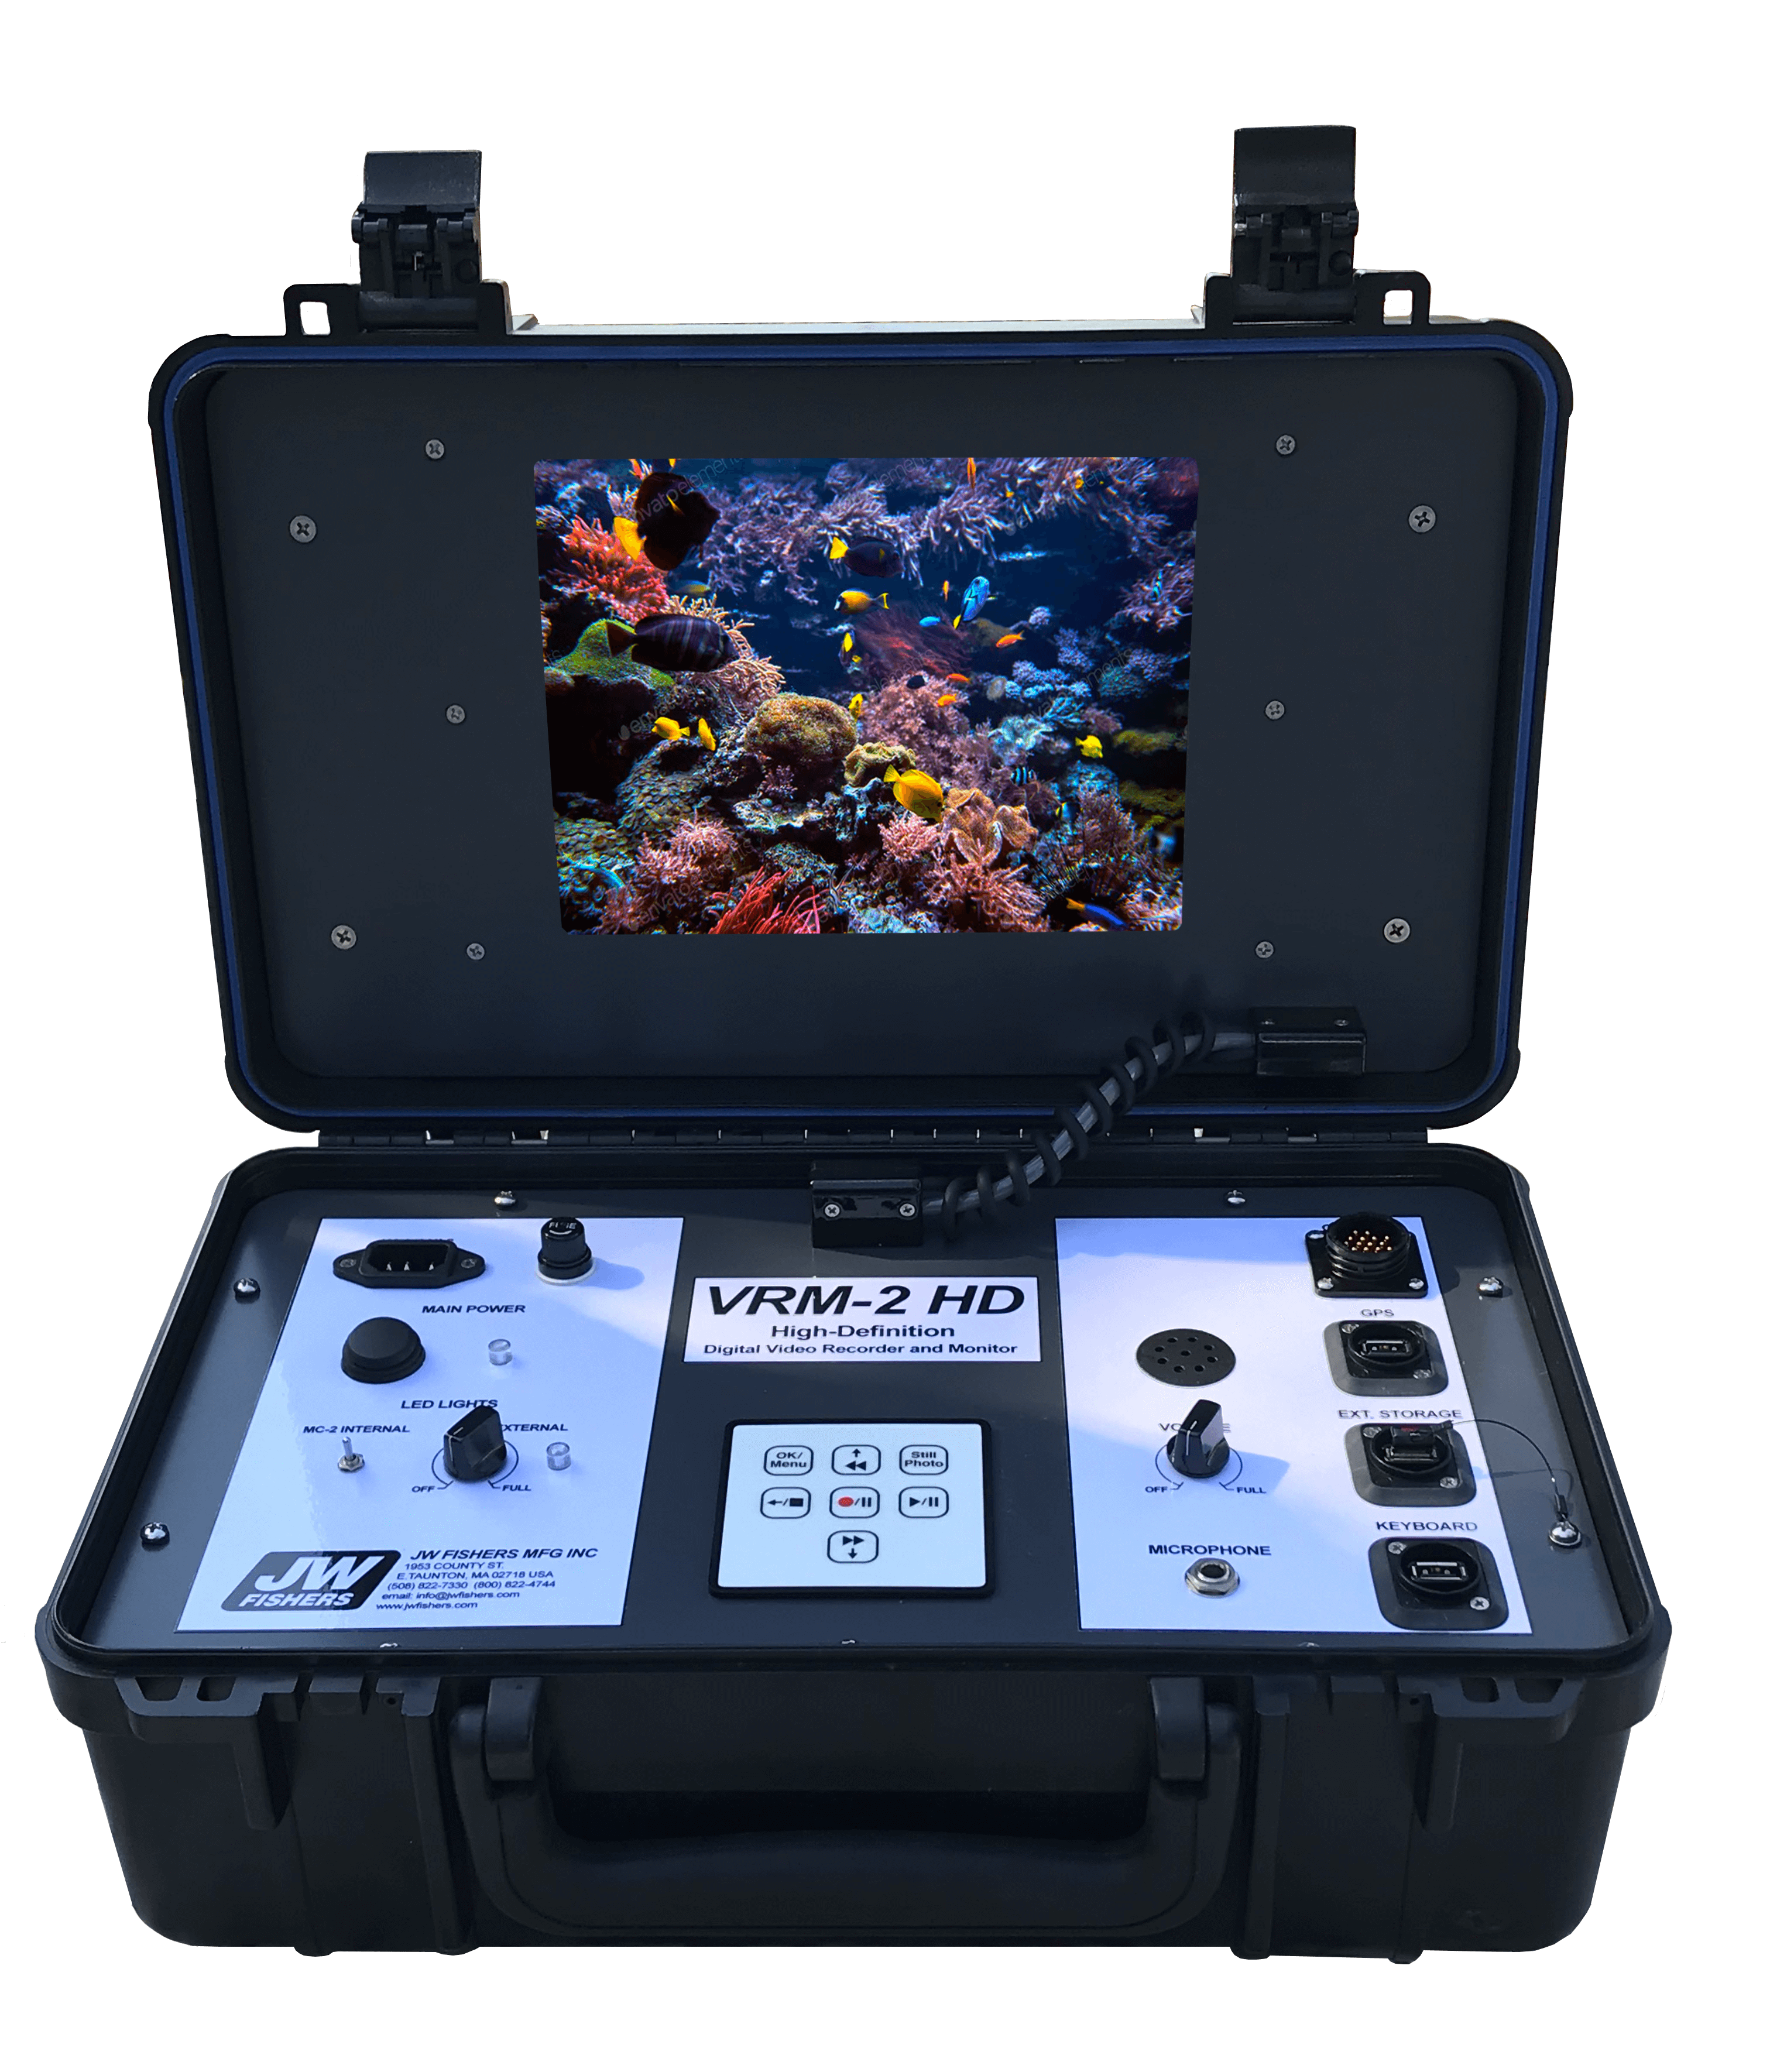 SondeCAM HD Underwater Camera Rental